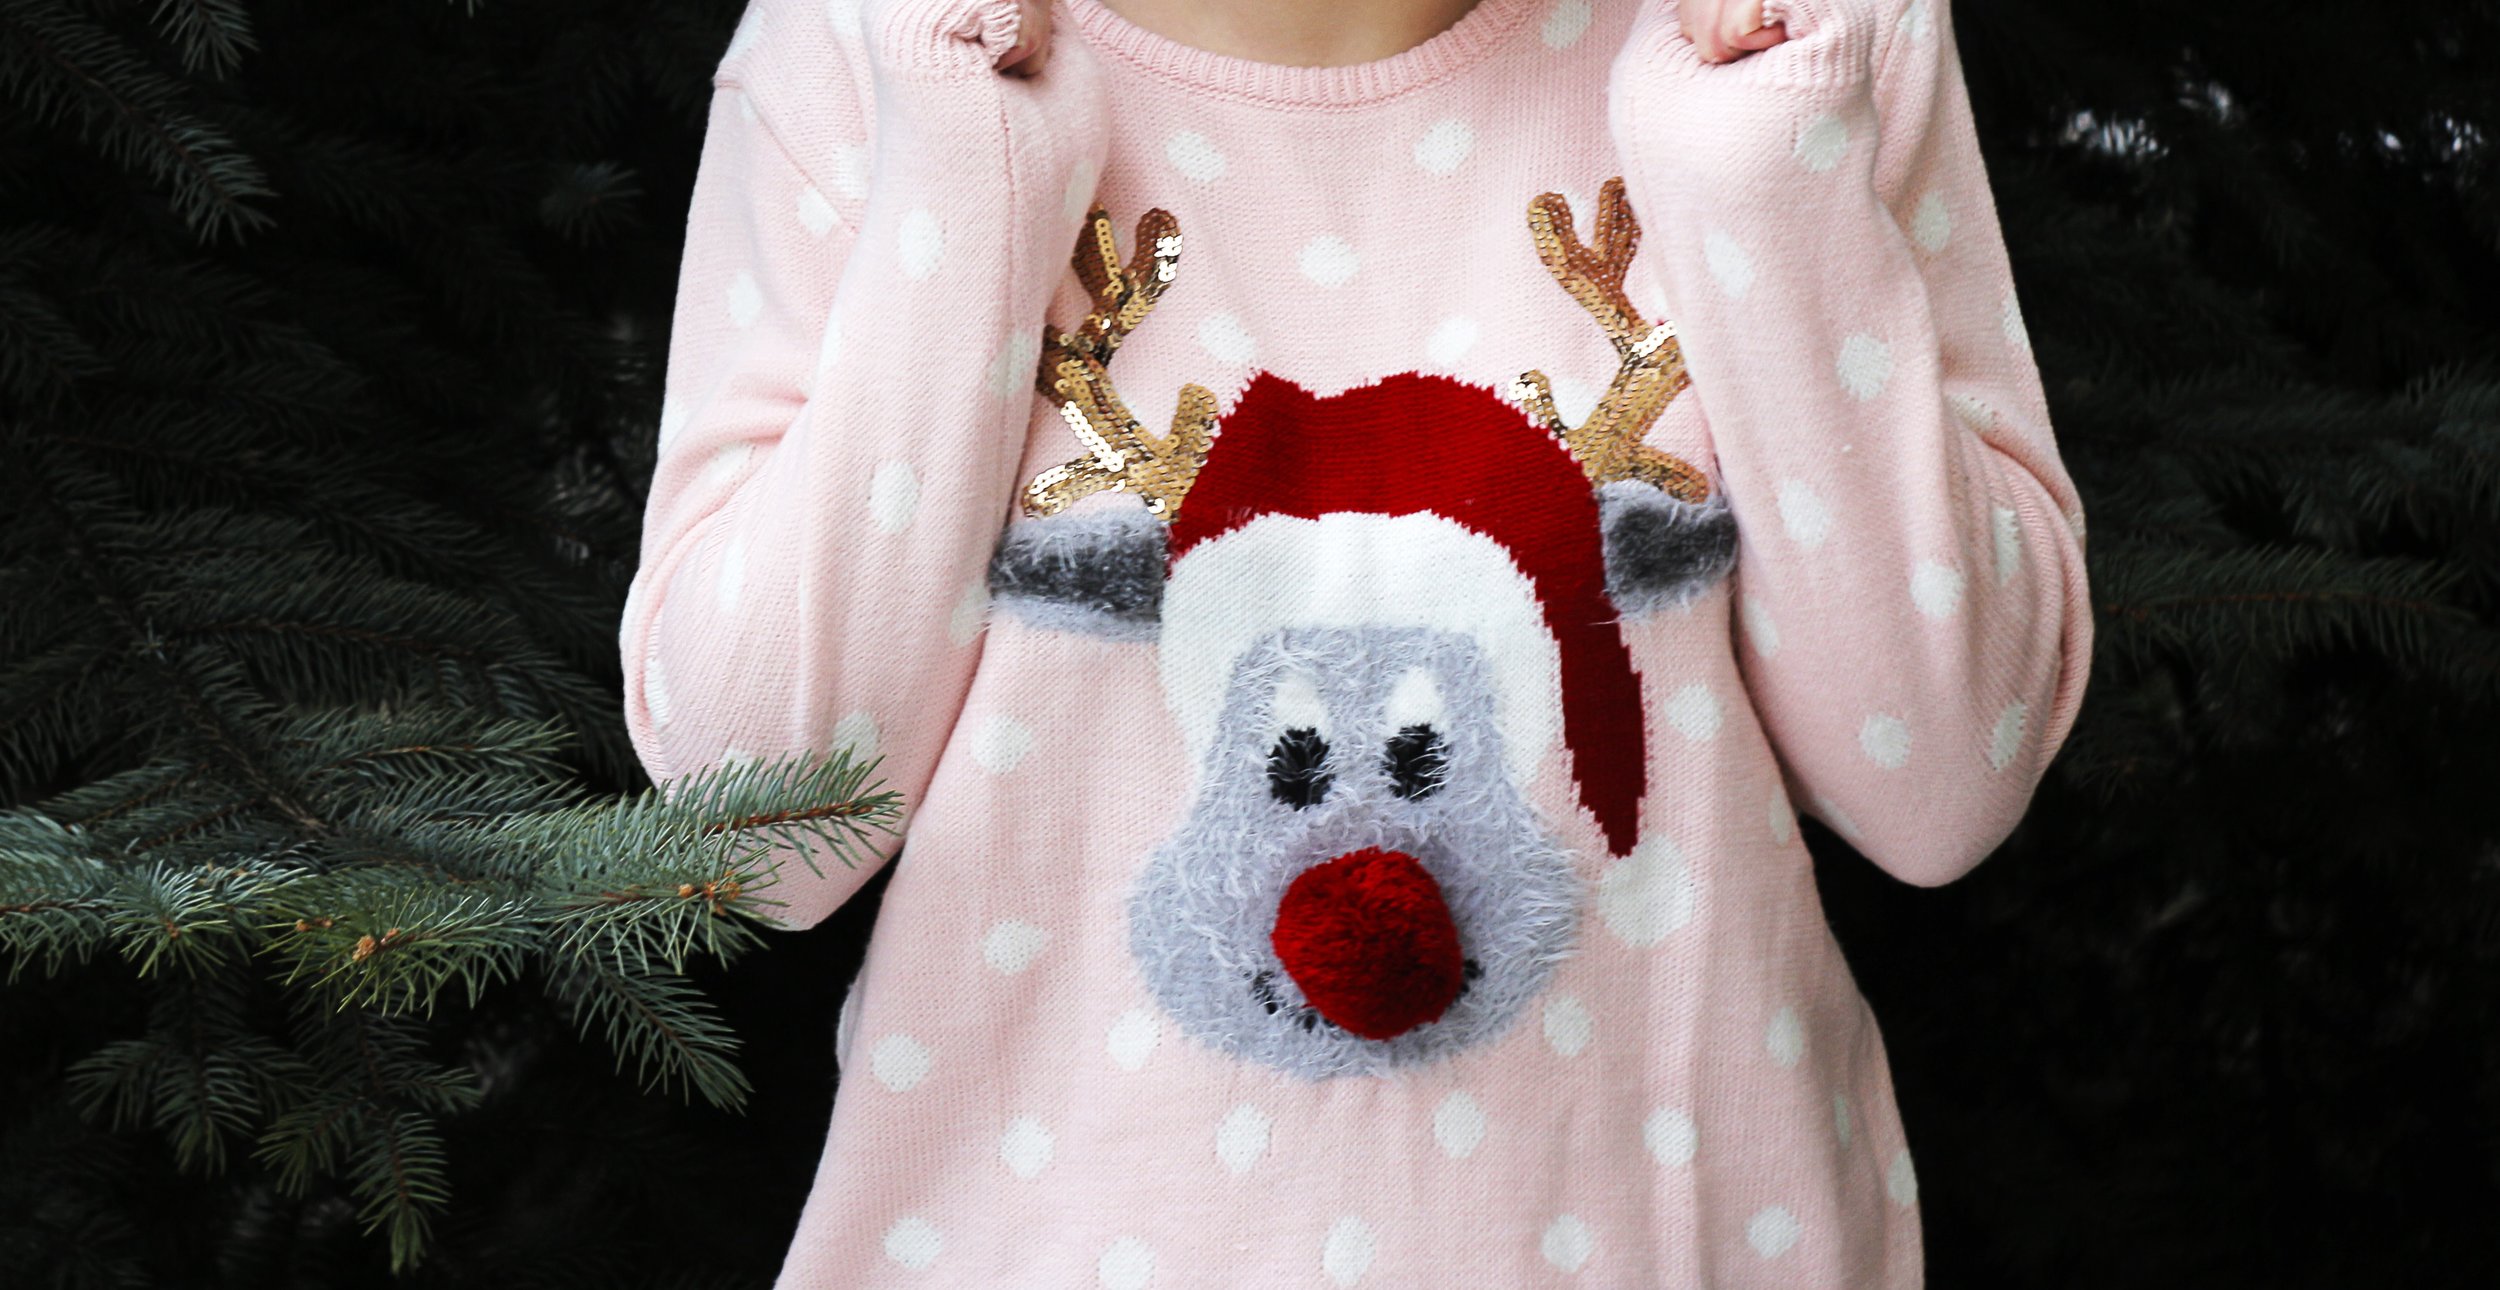 Chào mừng đến với Goodwill Knoxville - nơi để tìm kiếm những món đồ tuyệt vời cho buổi tiệc tùng Giáng sinh của bạn. Tại đây, bạn sẽ tìm thấy những chiếc áo len Giáng sinh xấu xí nhưng cực kỳ độc đáo, đồng thời giúp góp phần bảo vệ môi trường bằng việc tái chế. Hãy xem bức ảnh liên quan và khám phá thêm về chiếc áo len Giáng sinh tốt từ Goodwill Knoxville.